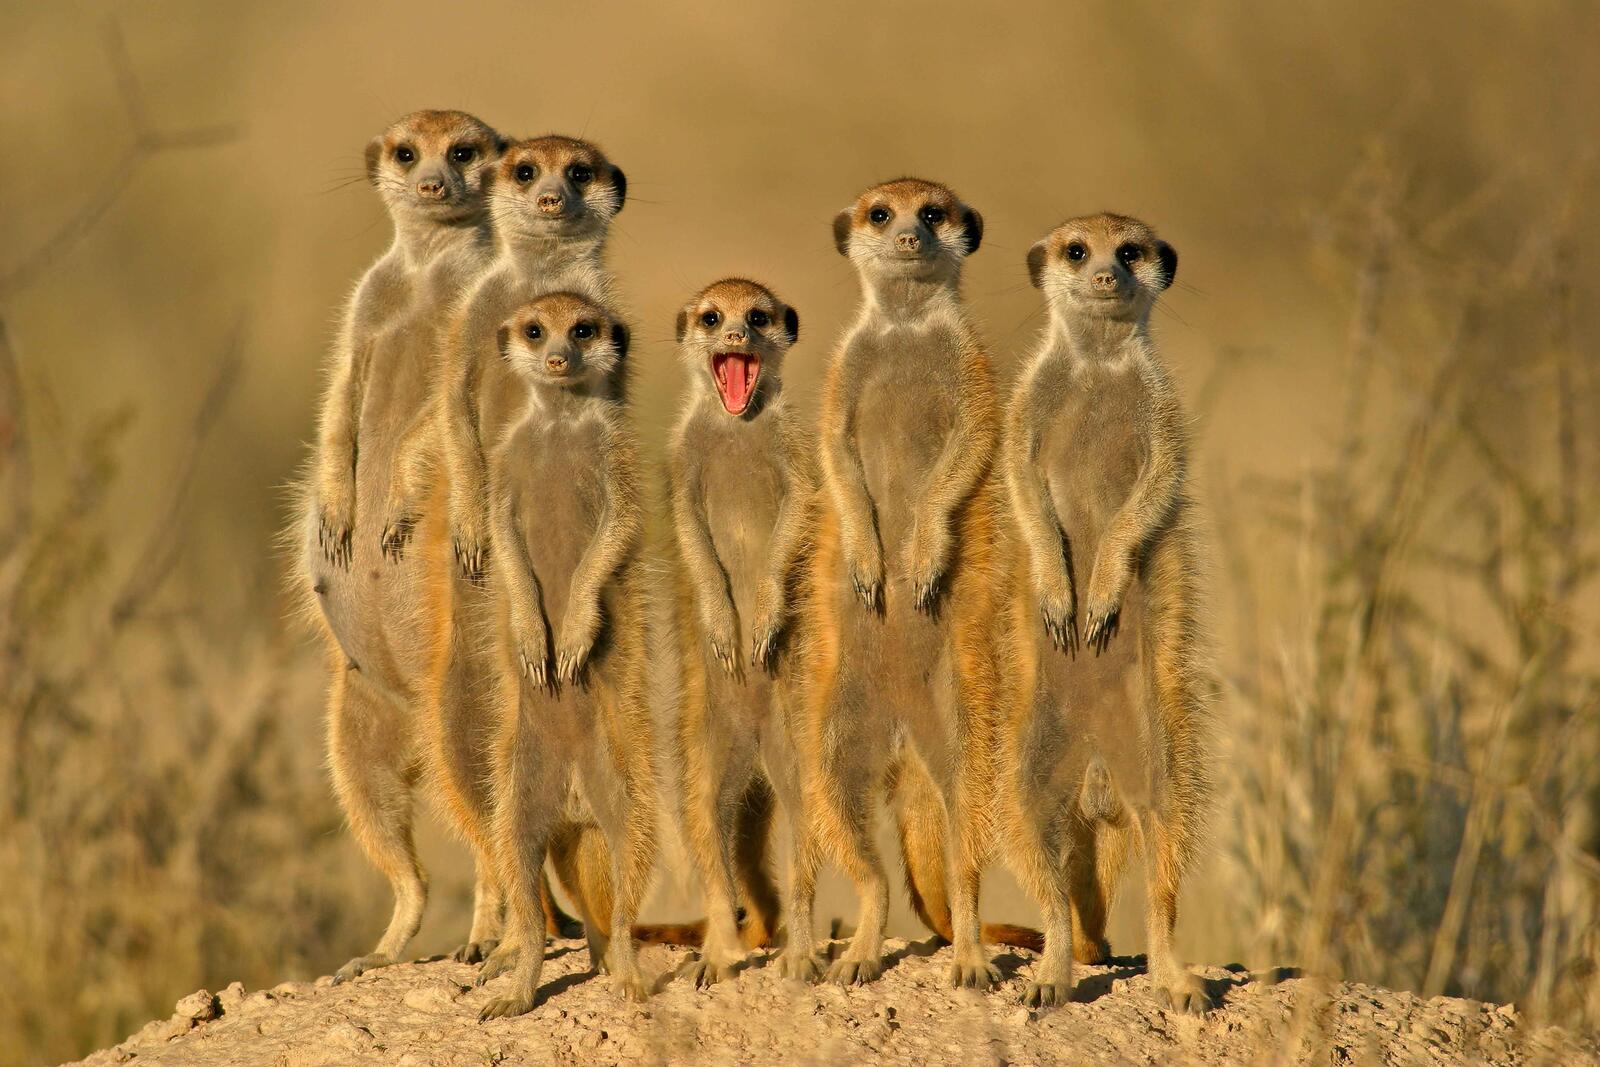 Wallpapers Meerkat meerkats Kgalagadi Transfrontier Park on the desktop